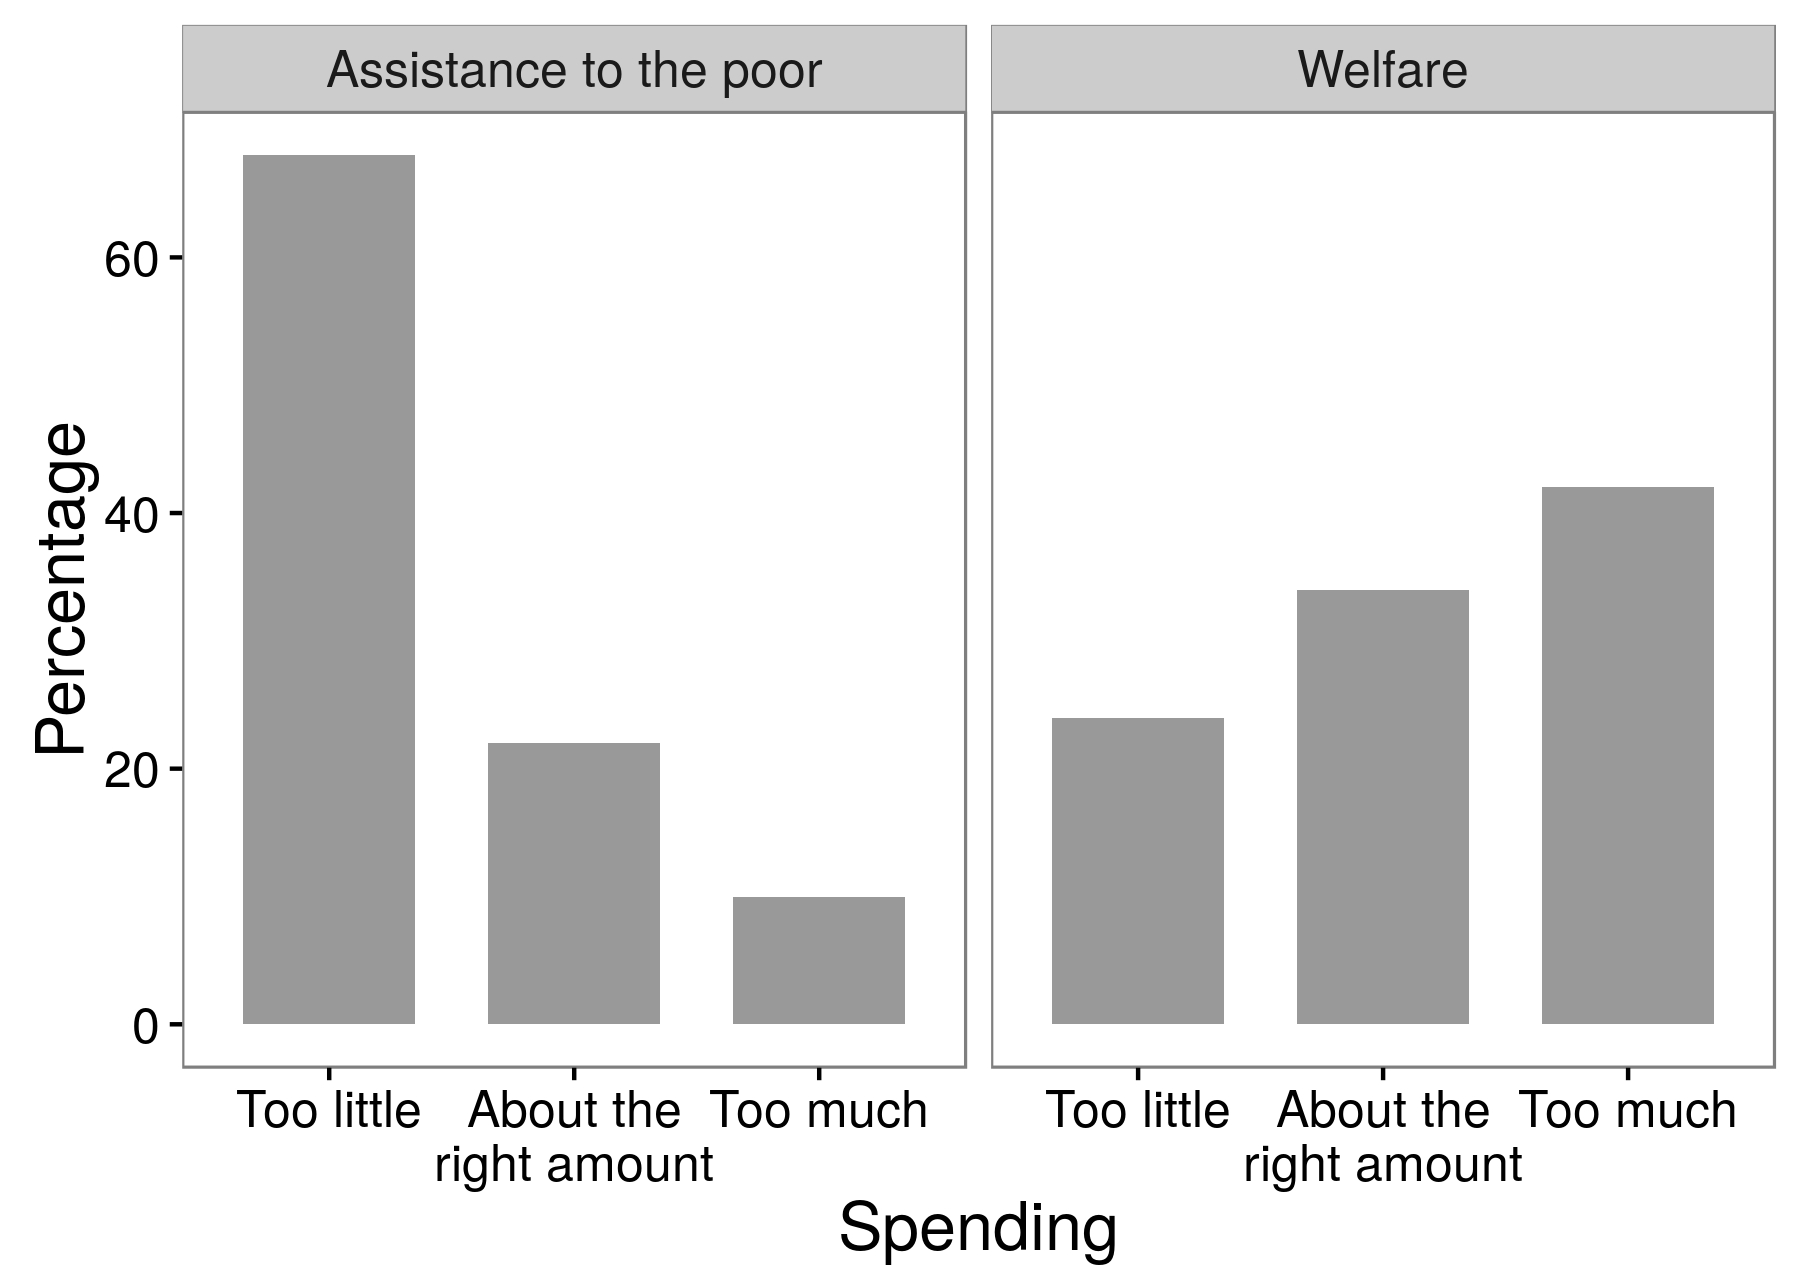 चित्रा 3.4: एक सर्वेक्षण प्रयोगों के नतीजे बताते हैं कि उत्तरदाता कल्याण से गरीबों को सहायता के लिए अधिक सहायक हैं। यह एक प्रश्न शब्द प्रभाव का एक उदाहरण है जिससे शोधकर्ताओं द्वारा प्राप्त उत्तरों पर निर्भर करता है कि वे अपने प्रश्नों में किस शब्द का उपयोग करते हैं। ह्यूबर और पेरिस (2013), तालिका ए 1 से अनुकूलित।